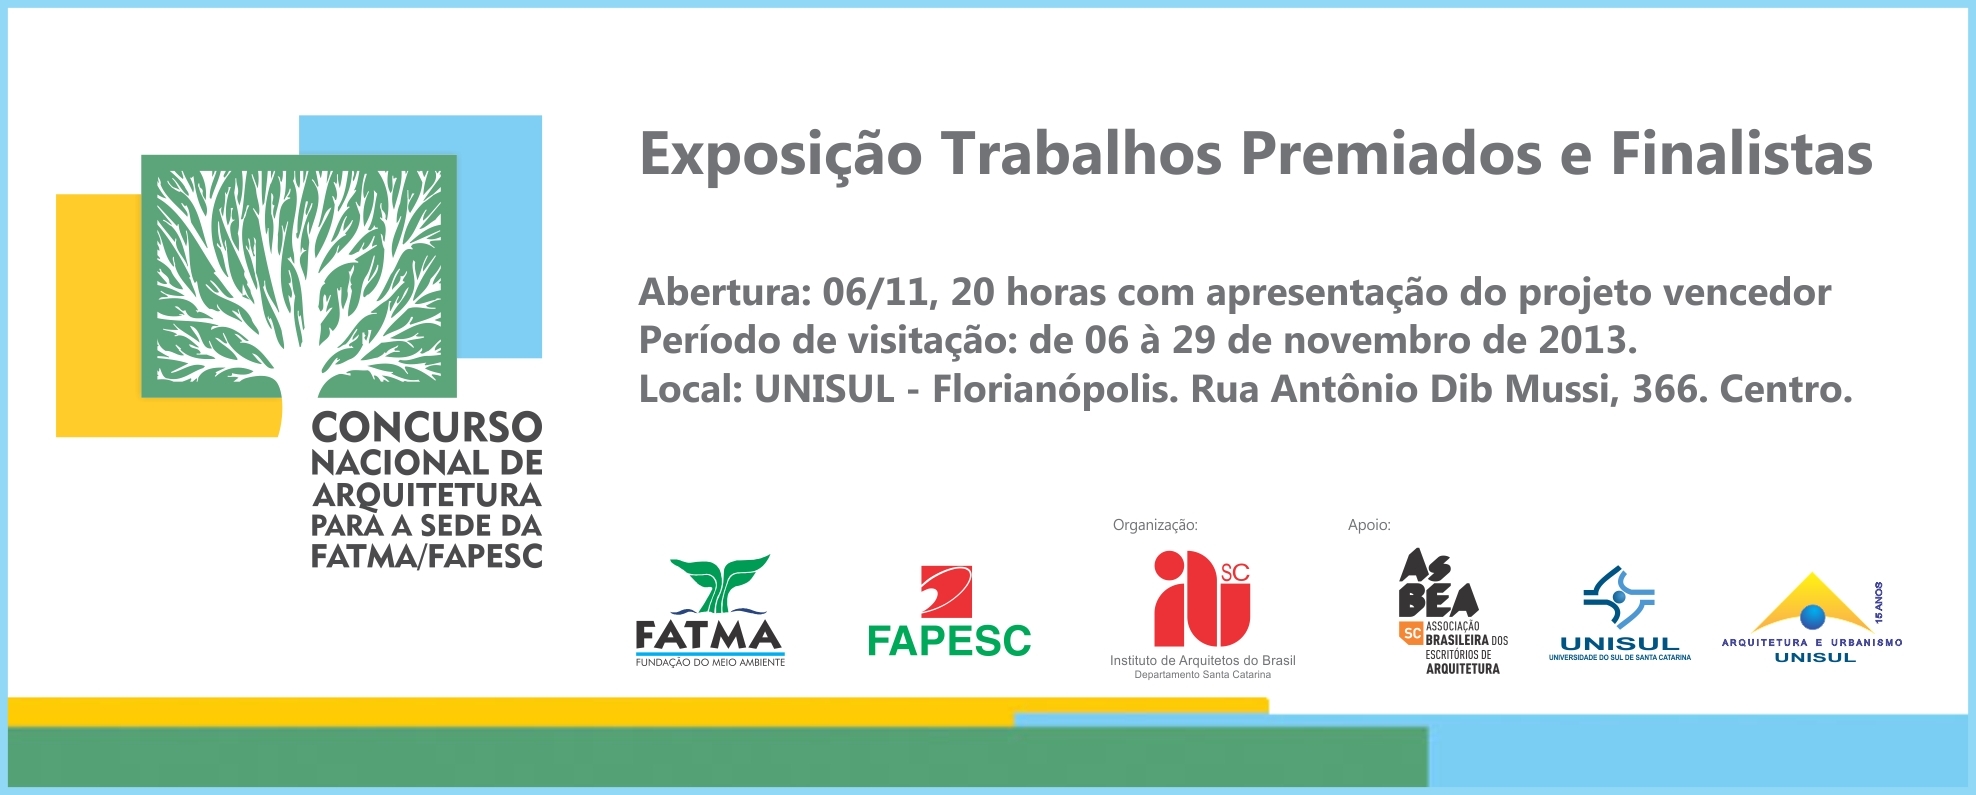 Convite-Concurso_IAB-FATMA-FAPESC-EXPOSICAO_